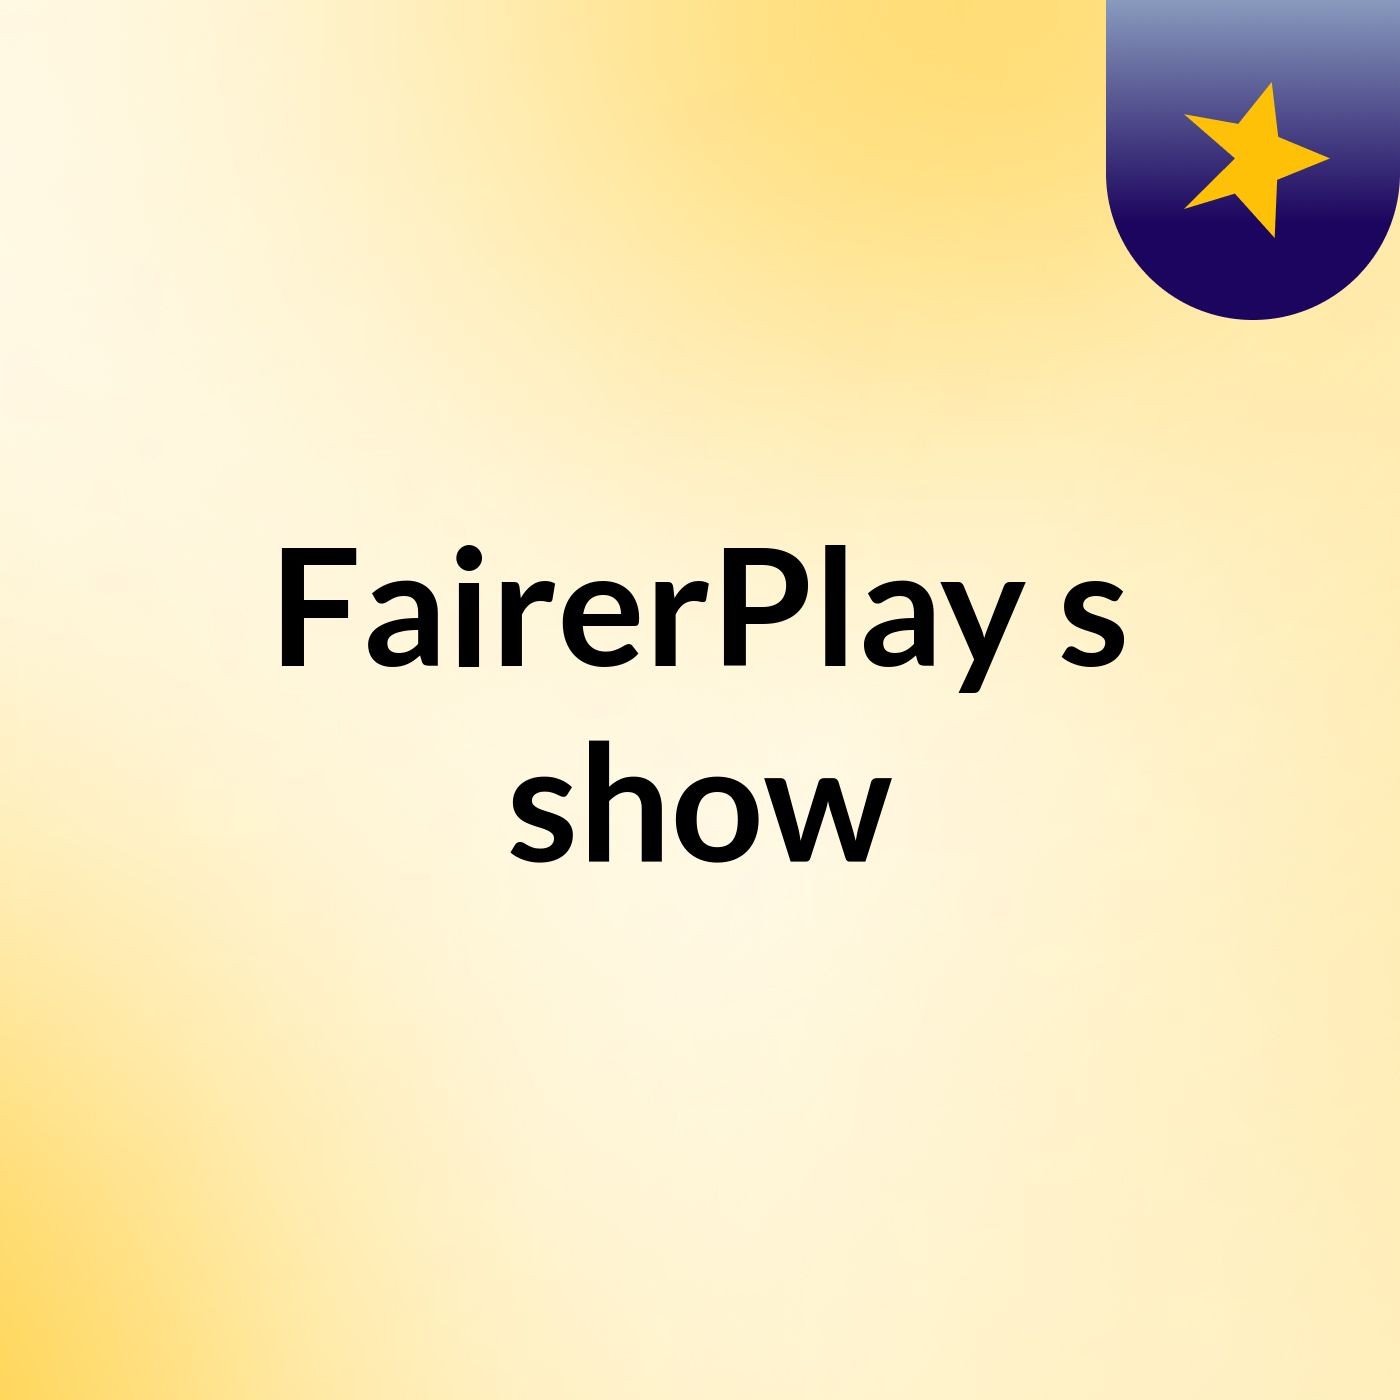 FairerPlay's show